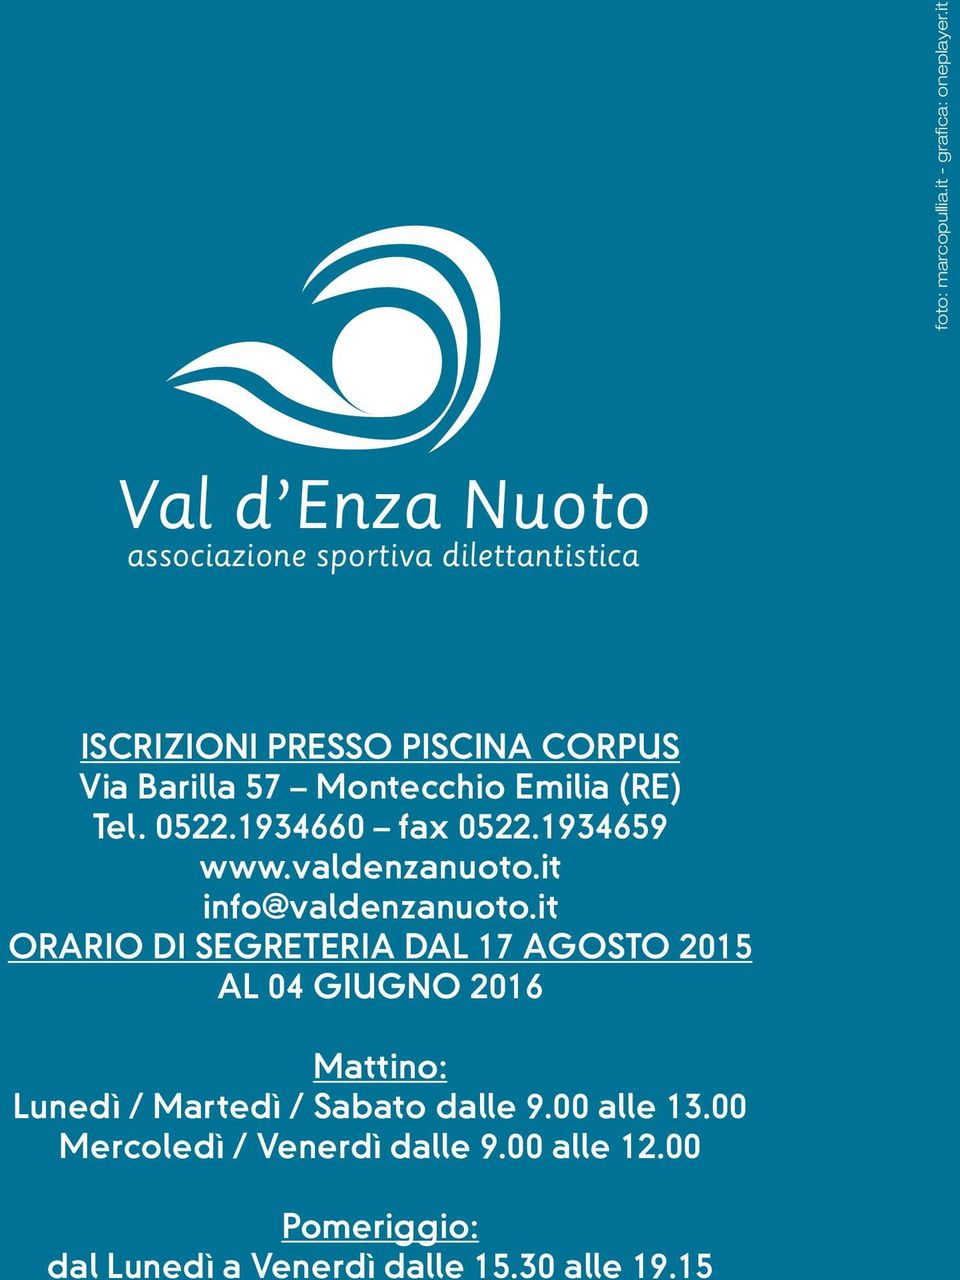 1934660 fax 0522.1934659 www.valdenzanuoto.it info@valdenzanuoto.